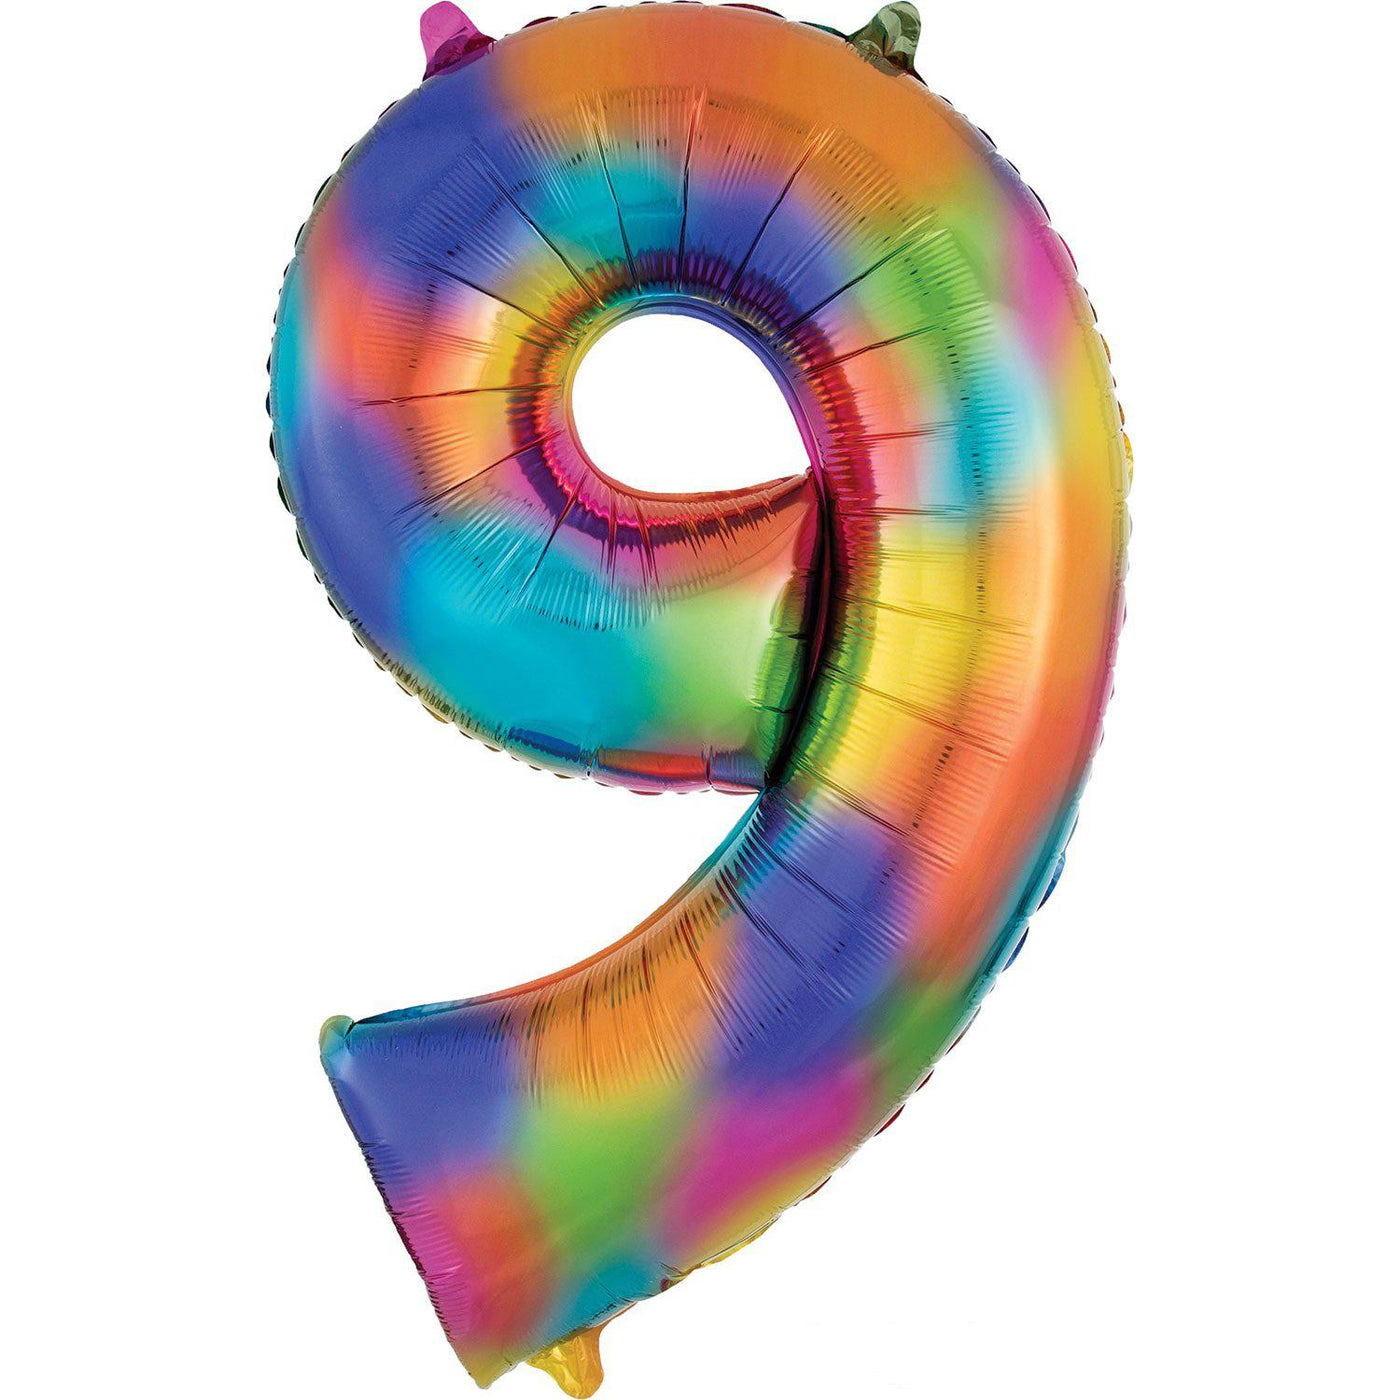 Giant Number Balloon - Rainbow